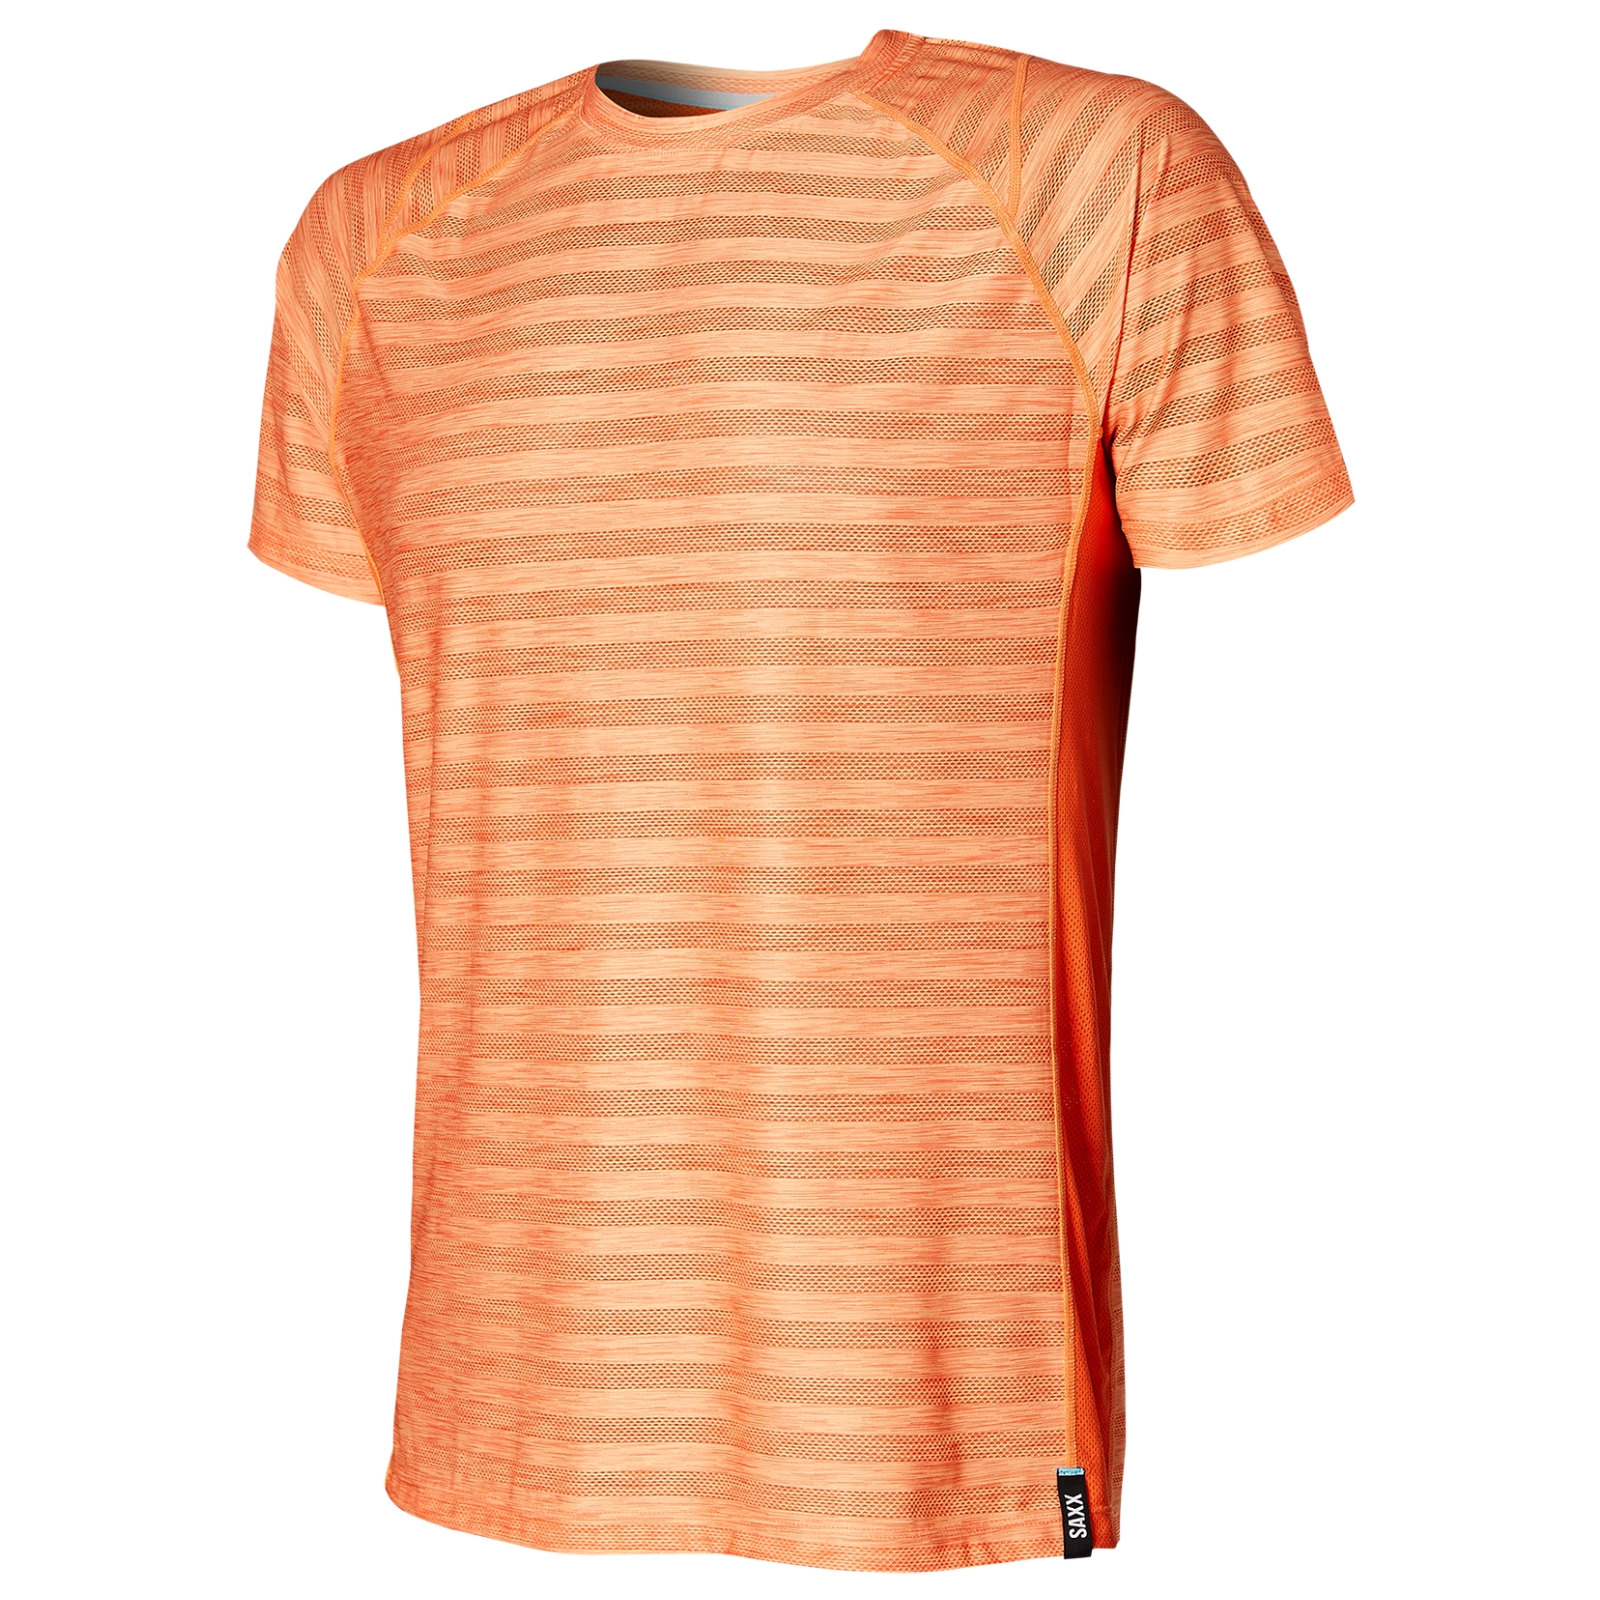 Image of Koszulka sportowa męska z krótkim rękawem z recyklingu SAXX HOT SHOT - pomarańczowa